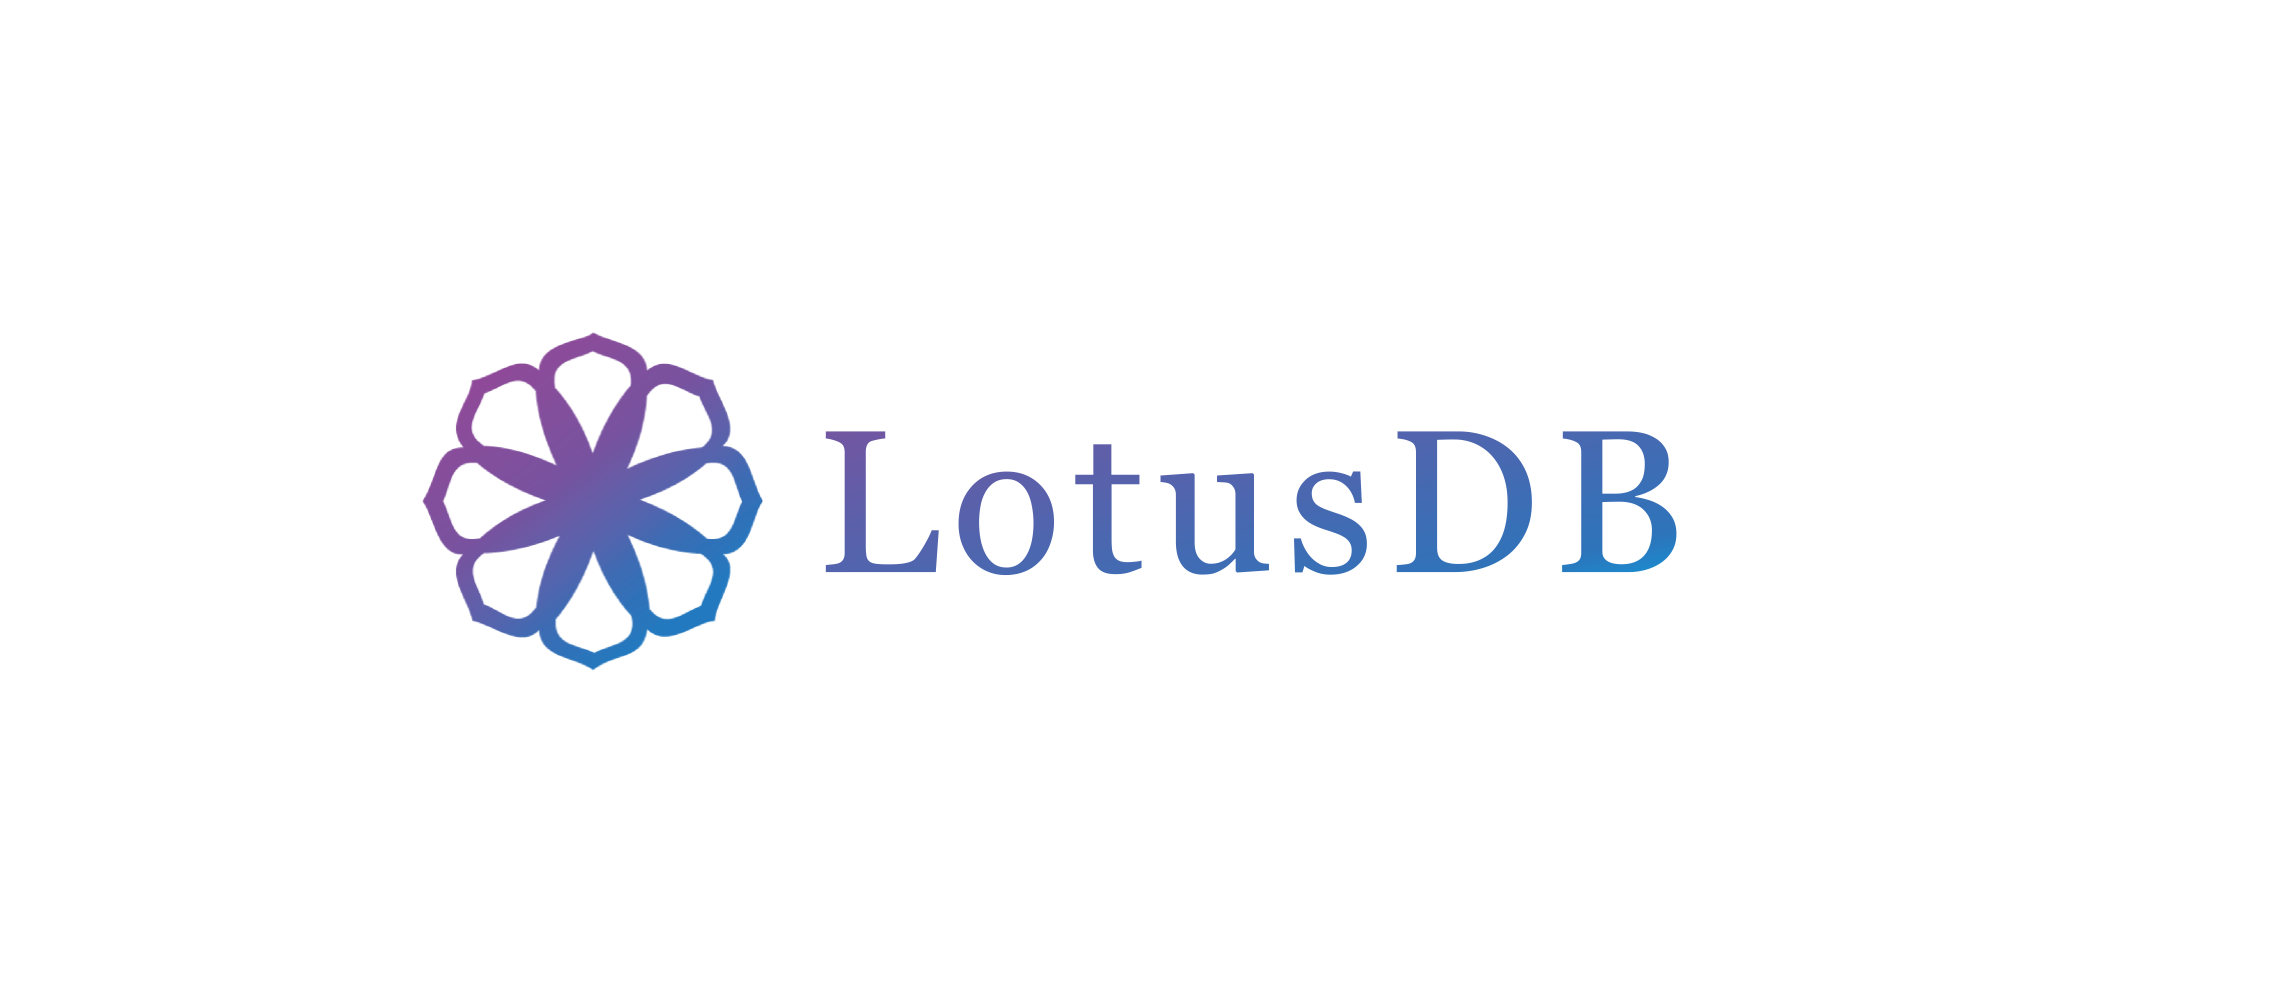 lotusdb-logo.png